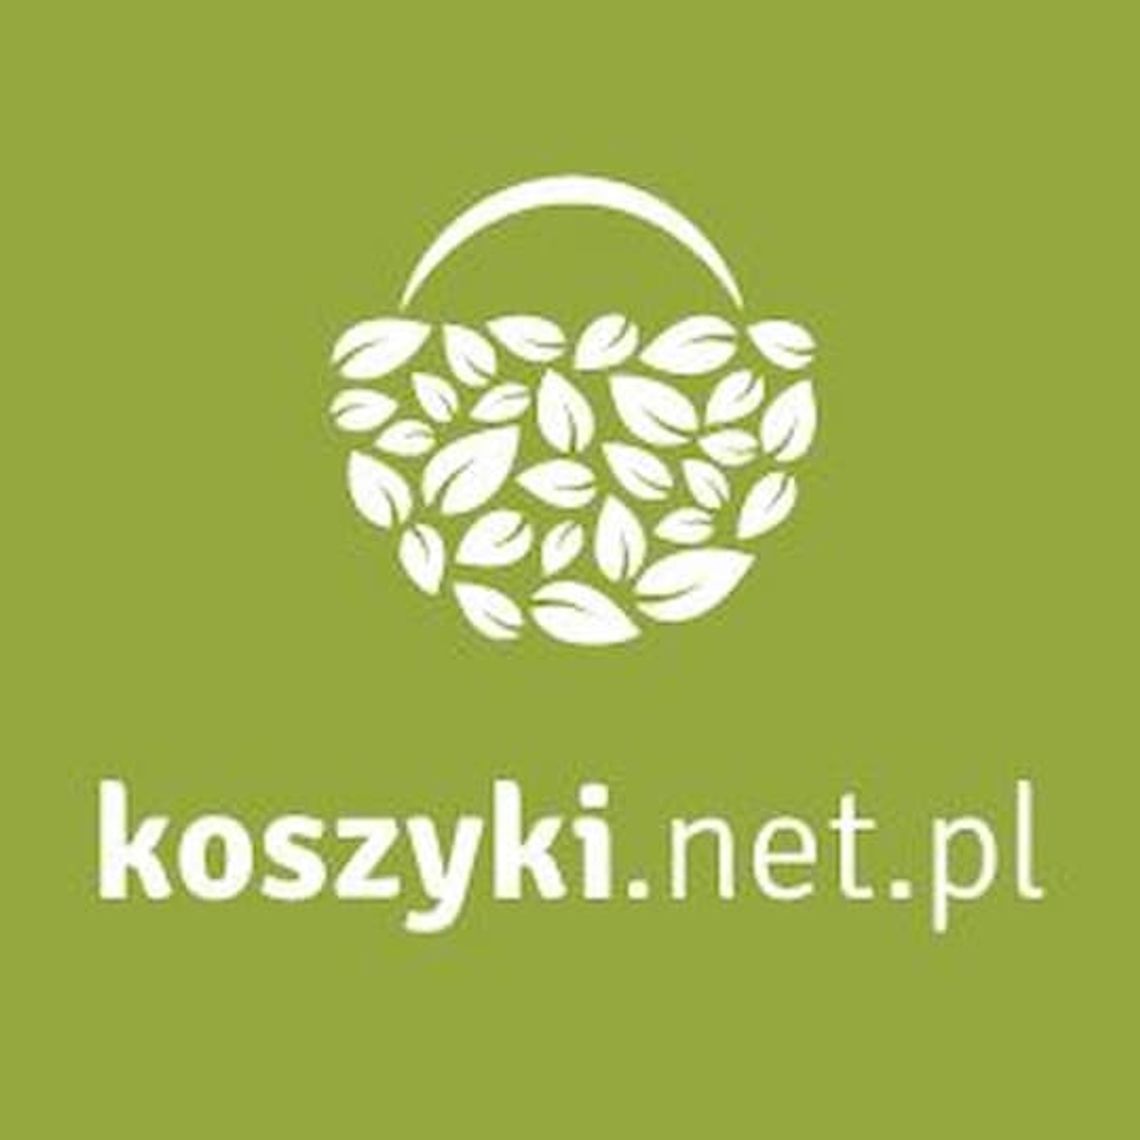 Koszyki.net.pl - kosze wiklinowe